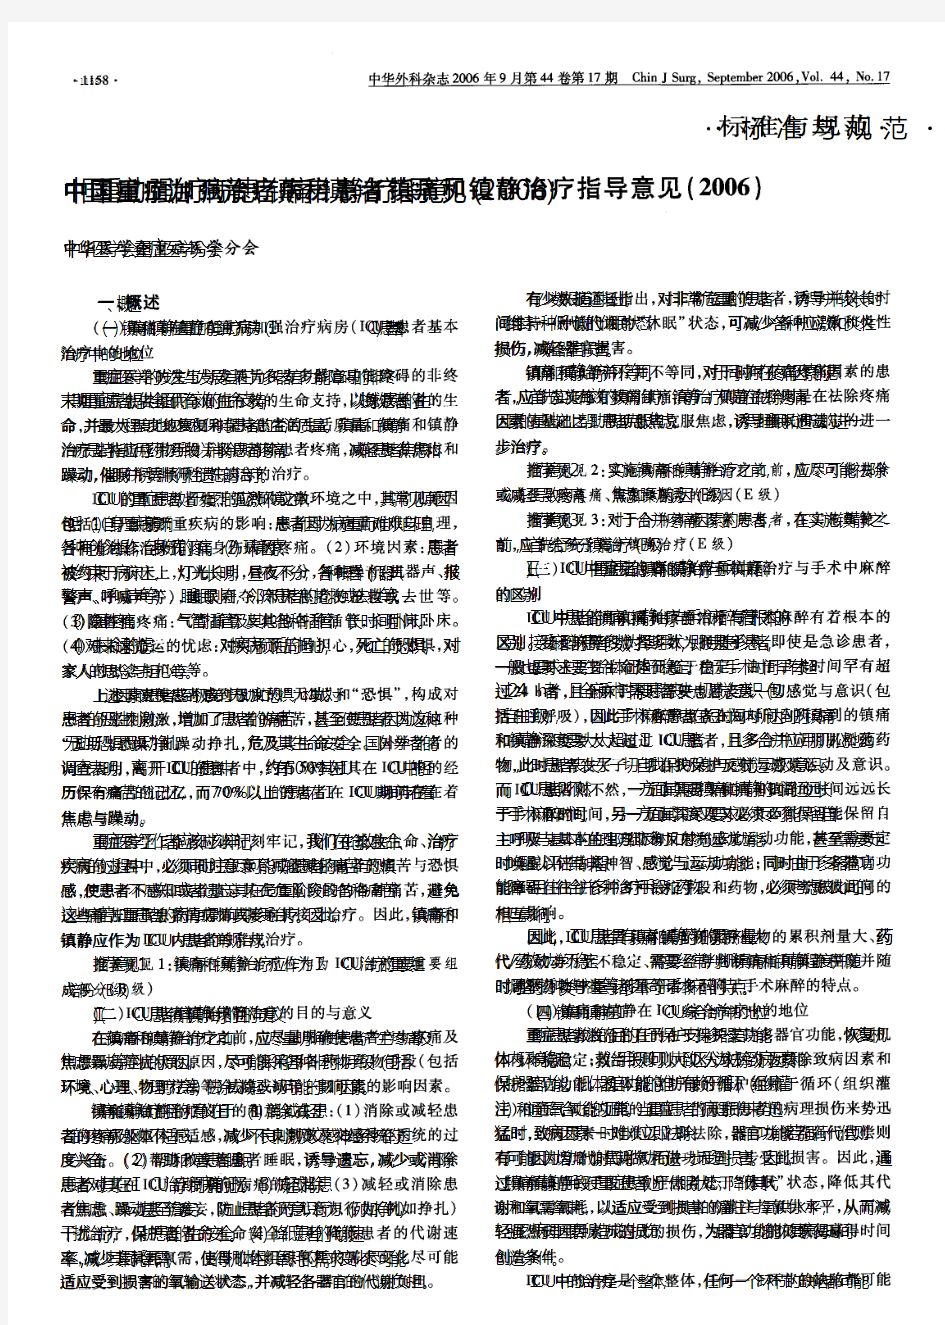 中国重症加强治疗病房患者镇痛和镇静治疗指导意见(2006)